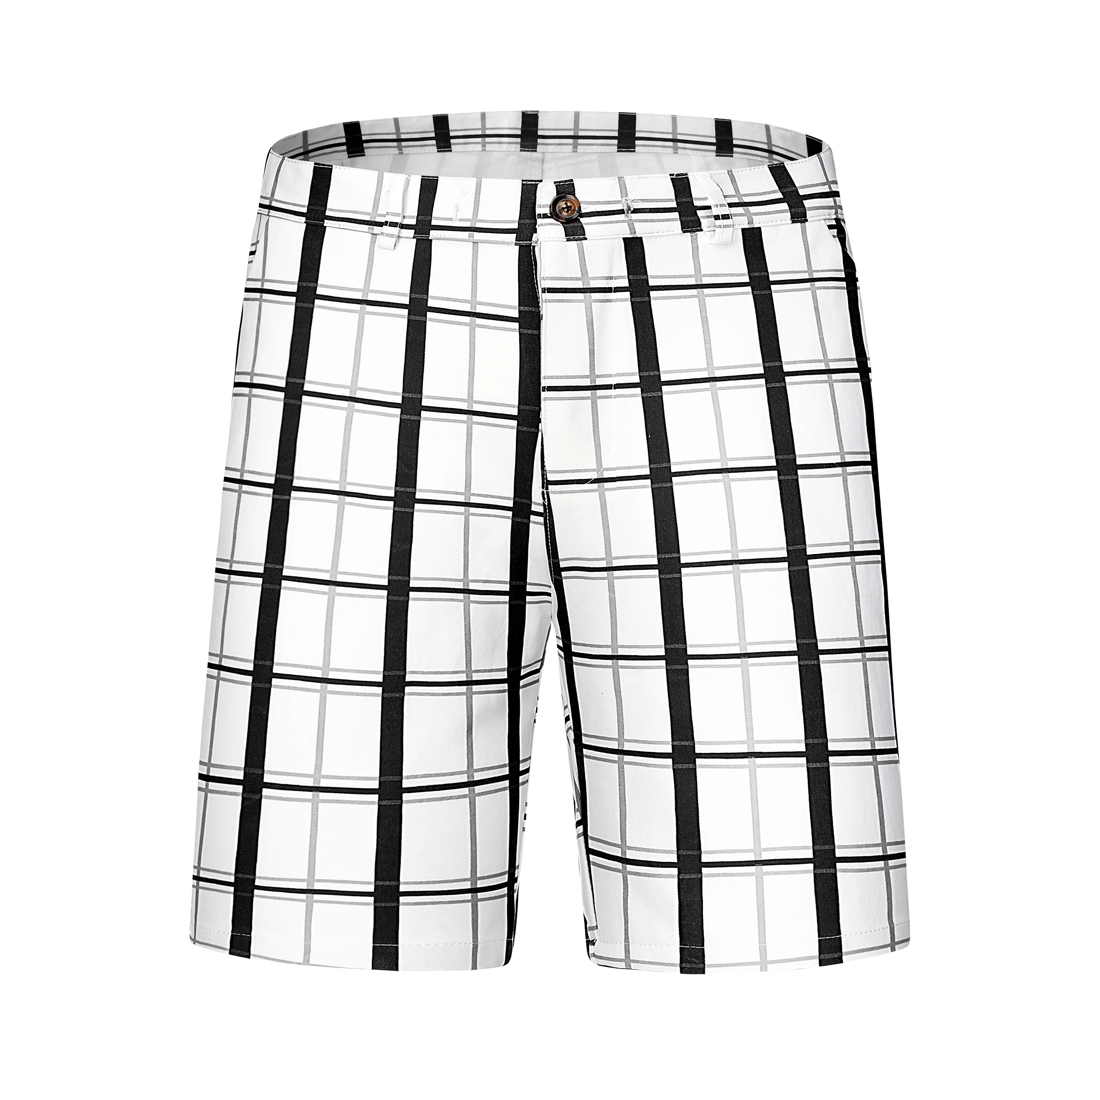 Unique Bargains Lars Amadeus Men's Plaid Shorts Checked Pattern Regular Fit Flat Front Dress Shorts